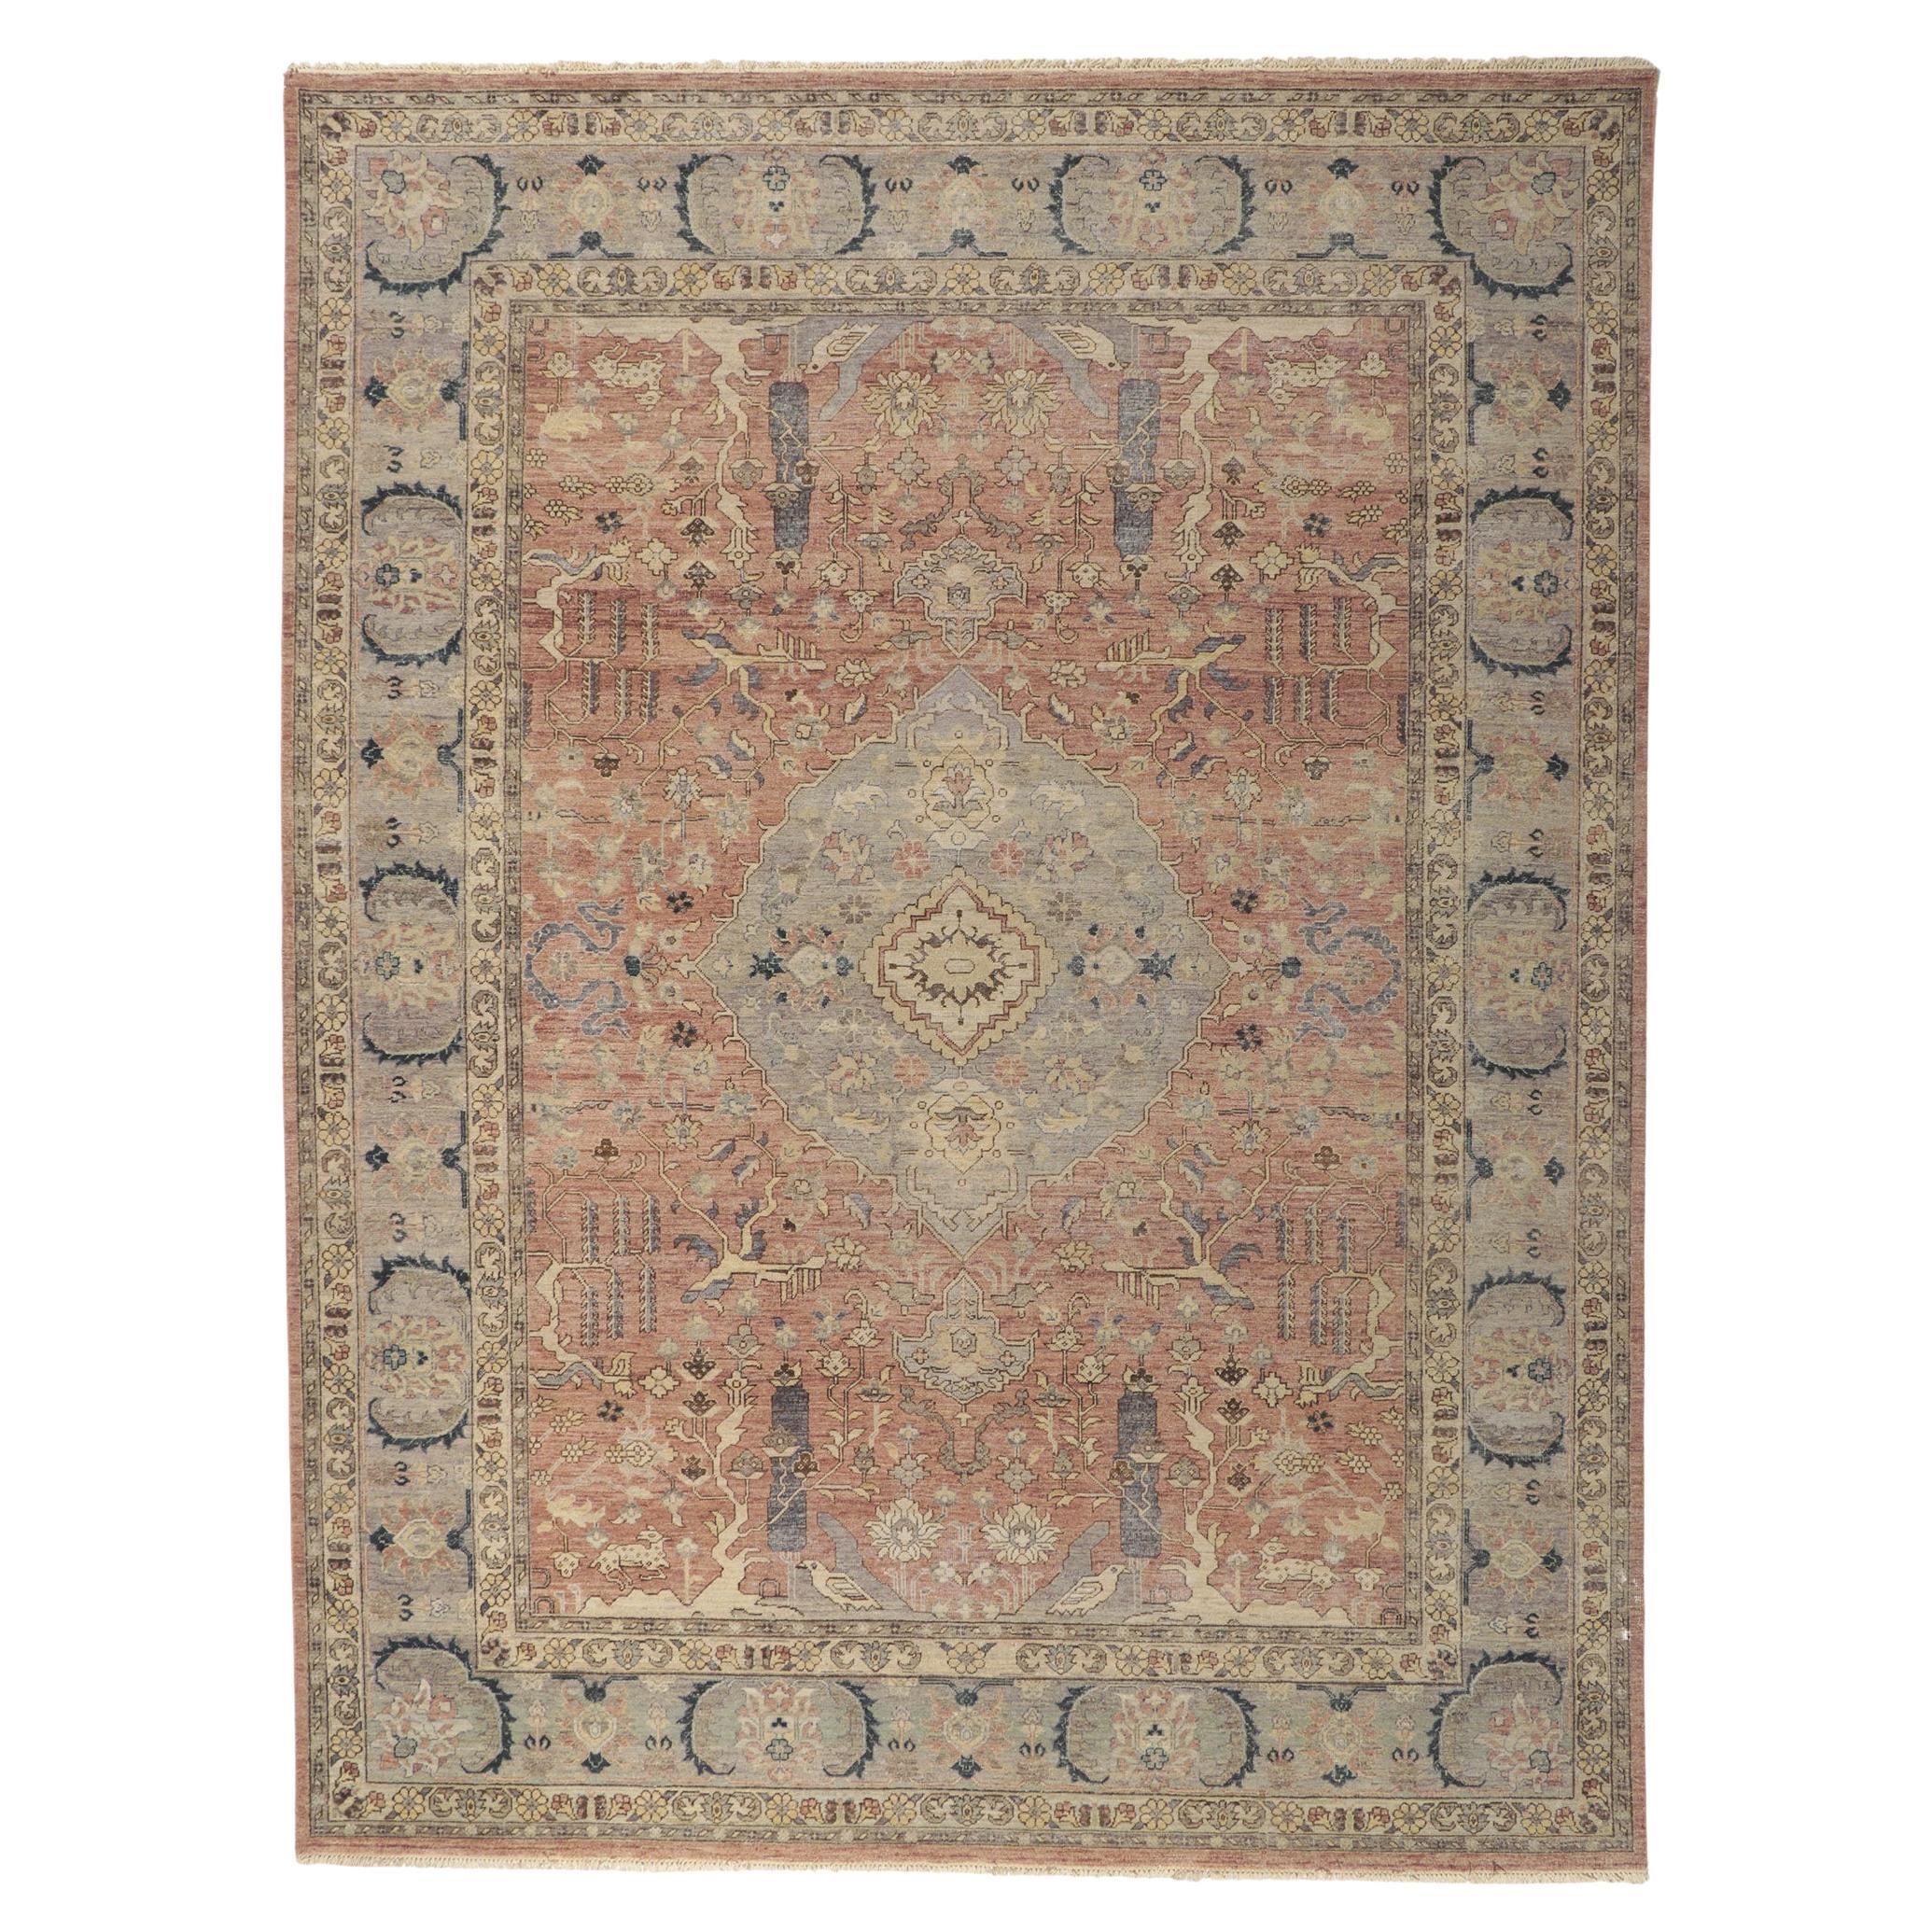 Neuer Distressed-Teppich im Vintage-Stil mit weichen, erdfarbenen Farben